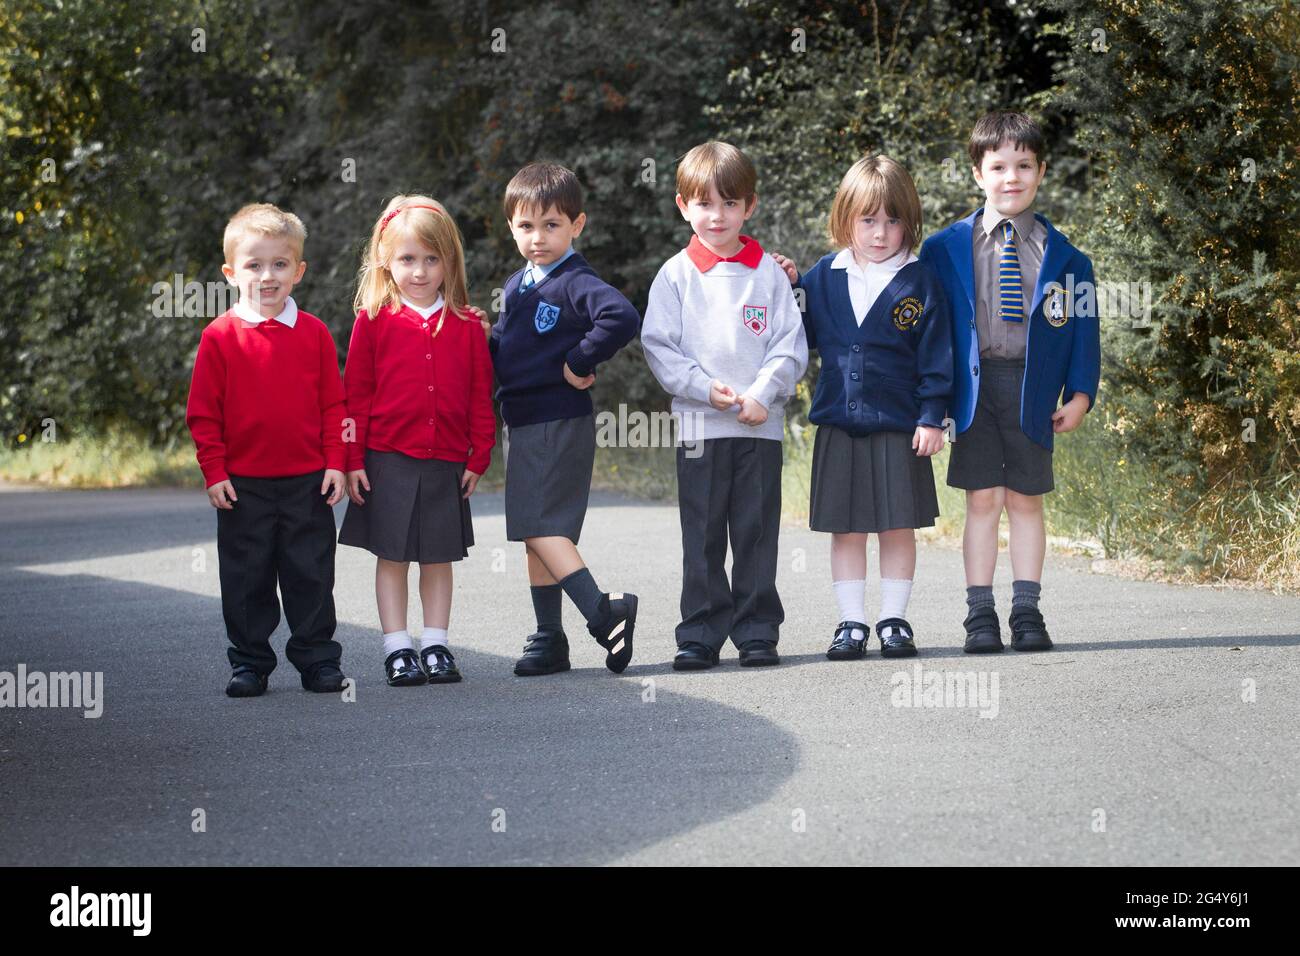 Niños pequeños que usan varios uniformes escolares Fotografía de stock -  Alamy